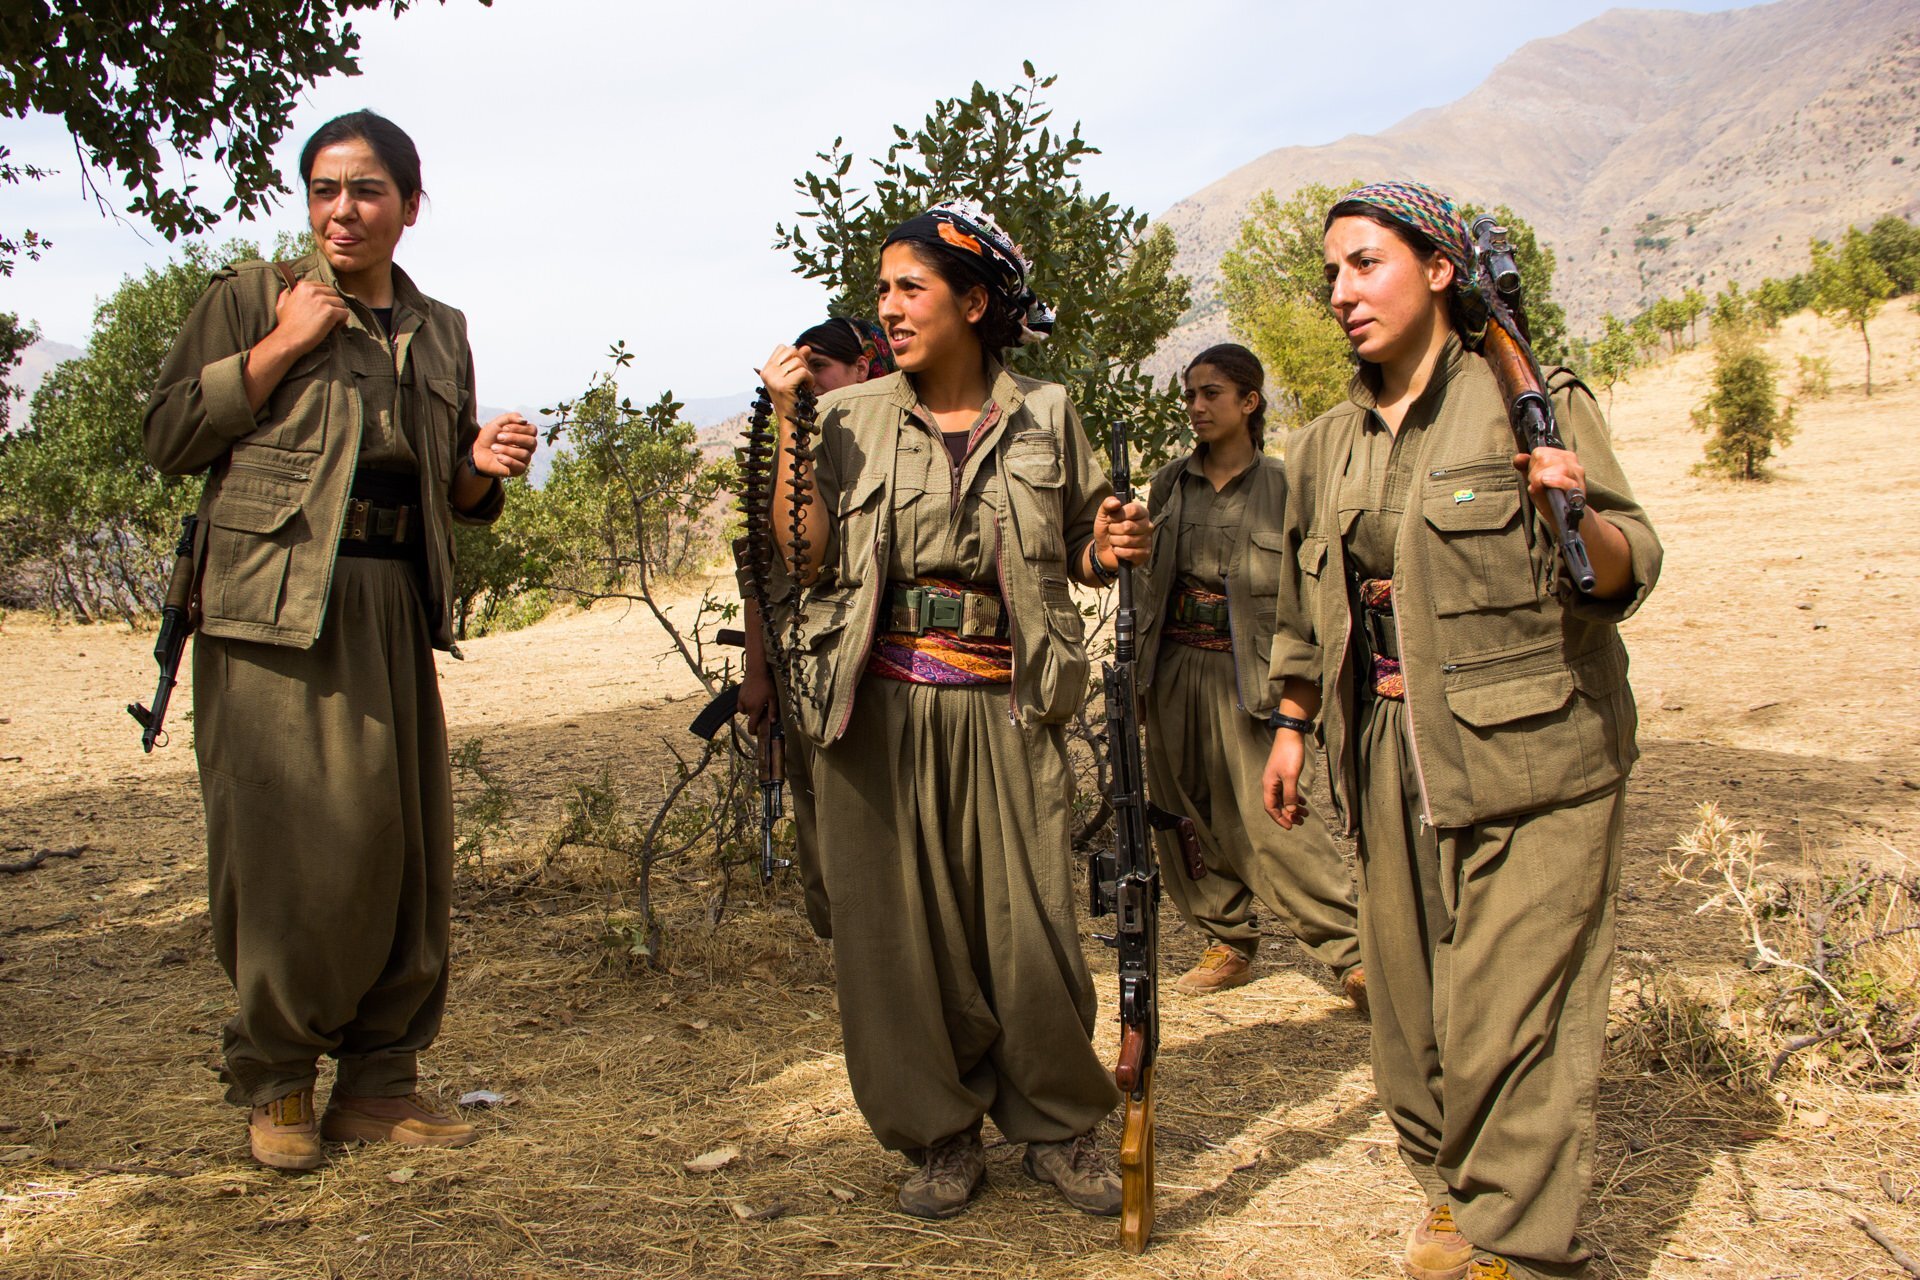 Hpg 4. Курдские девушки. Курдские девушки красивые. Курды зороастрийцы. Курдская рабочая партия женщины.